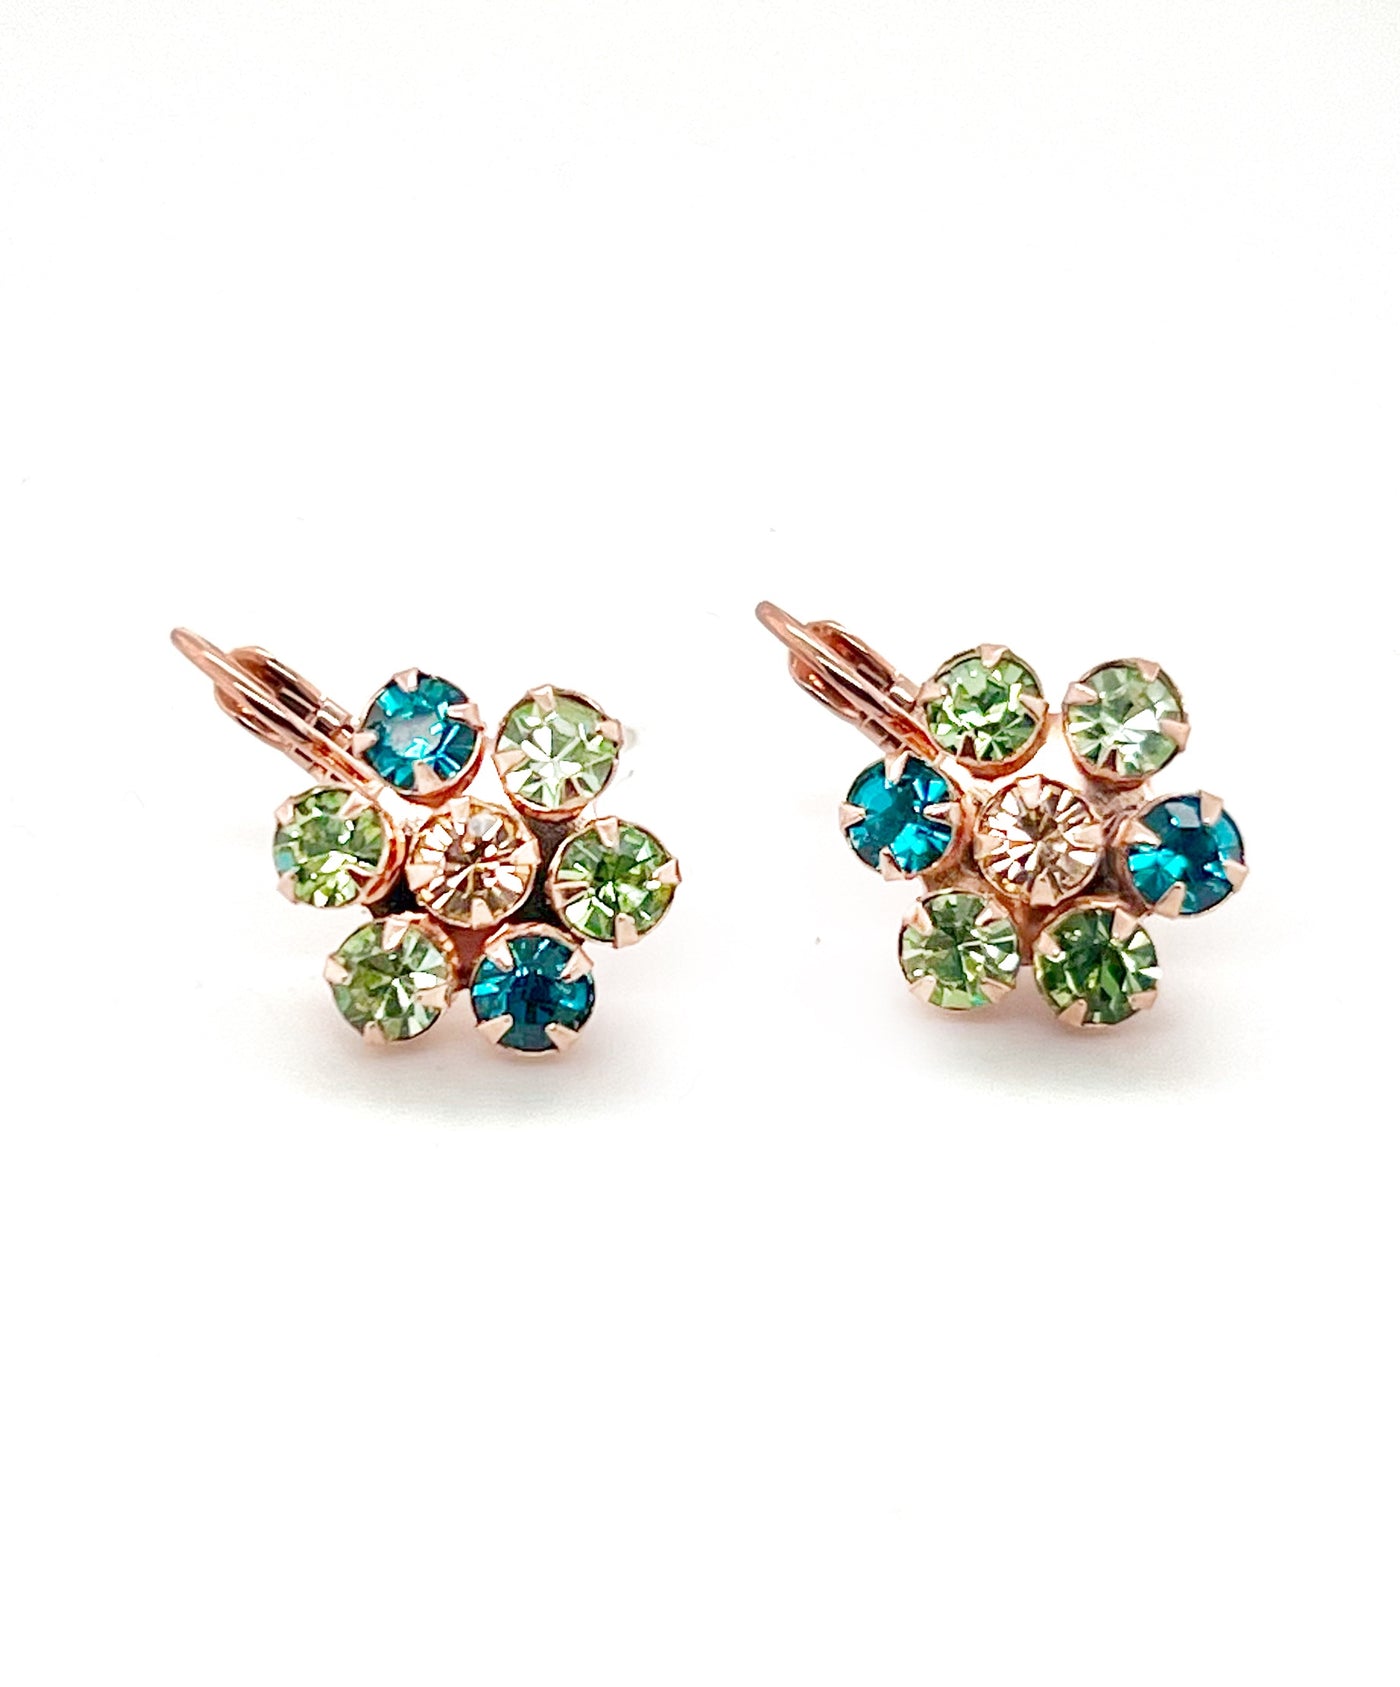 Teal green flower setting earrings